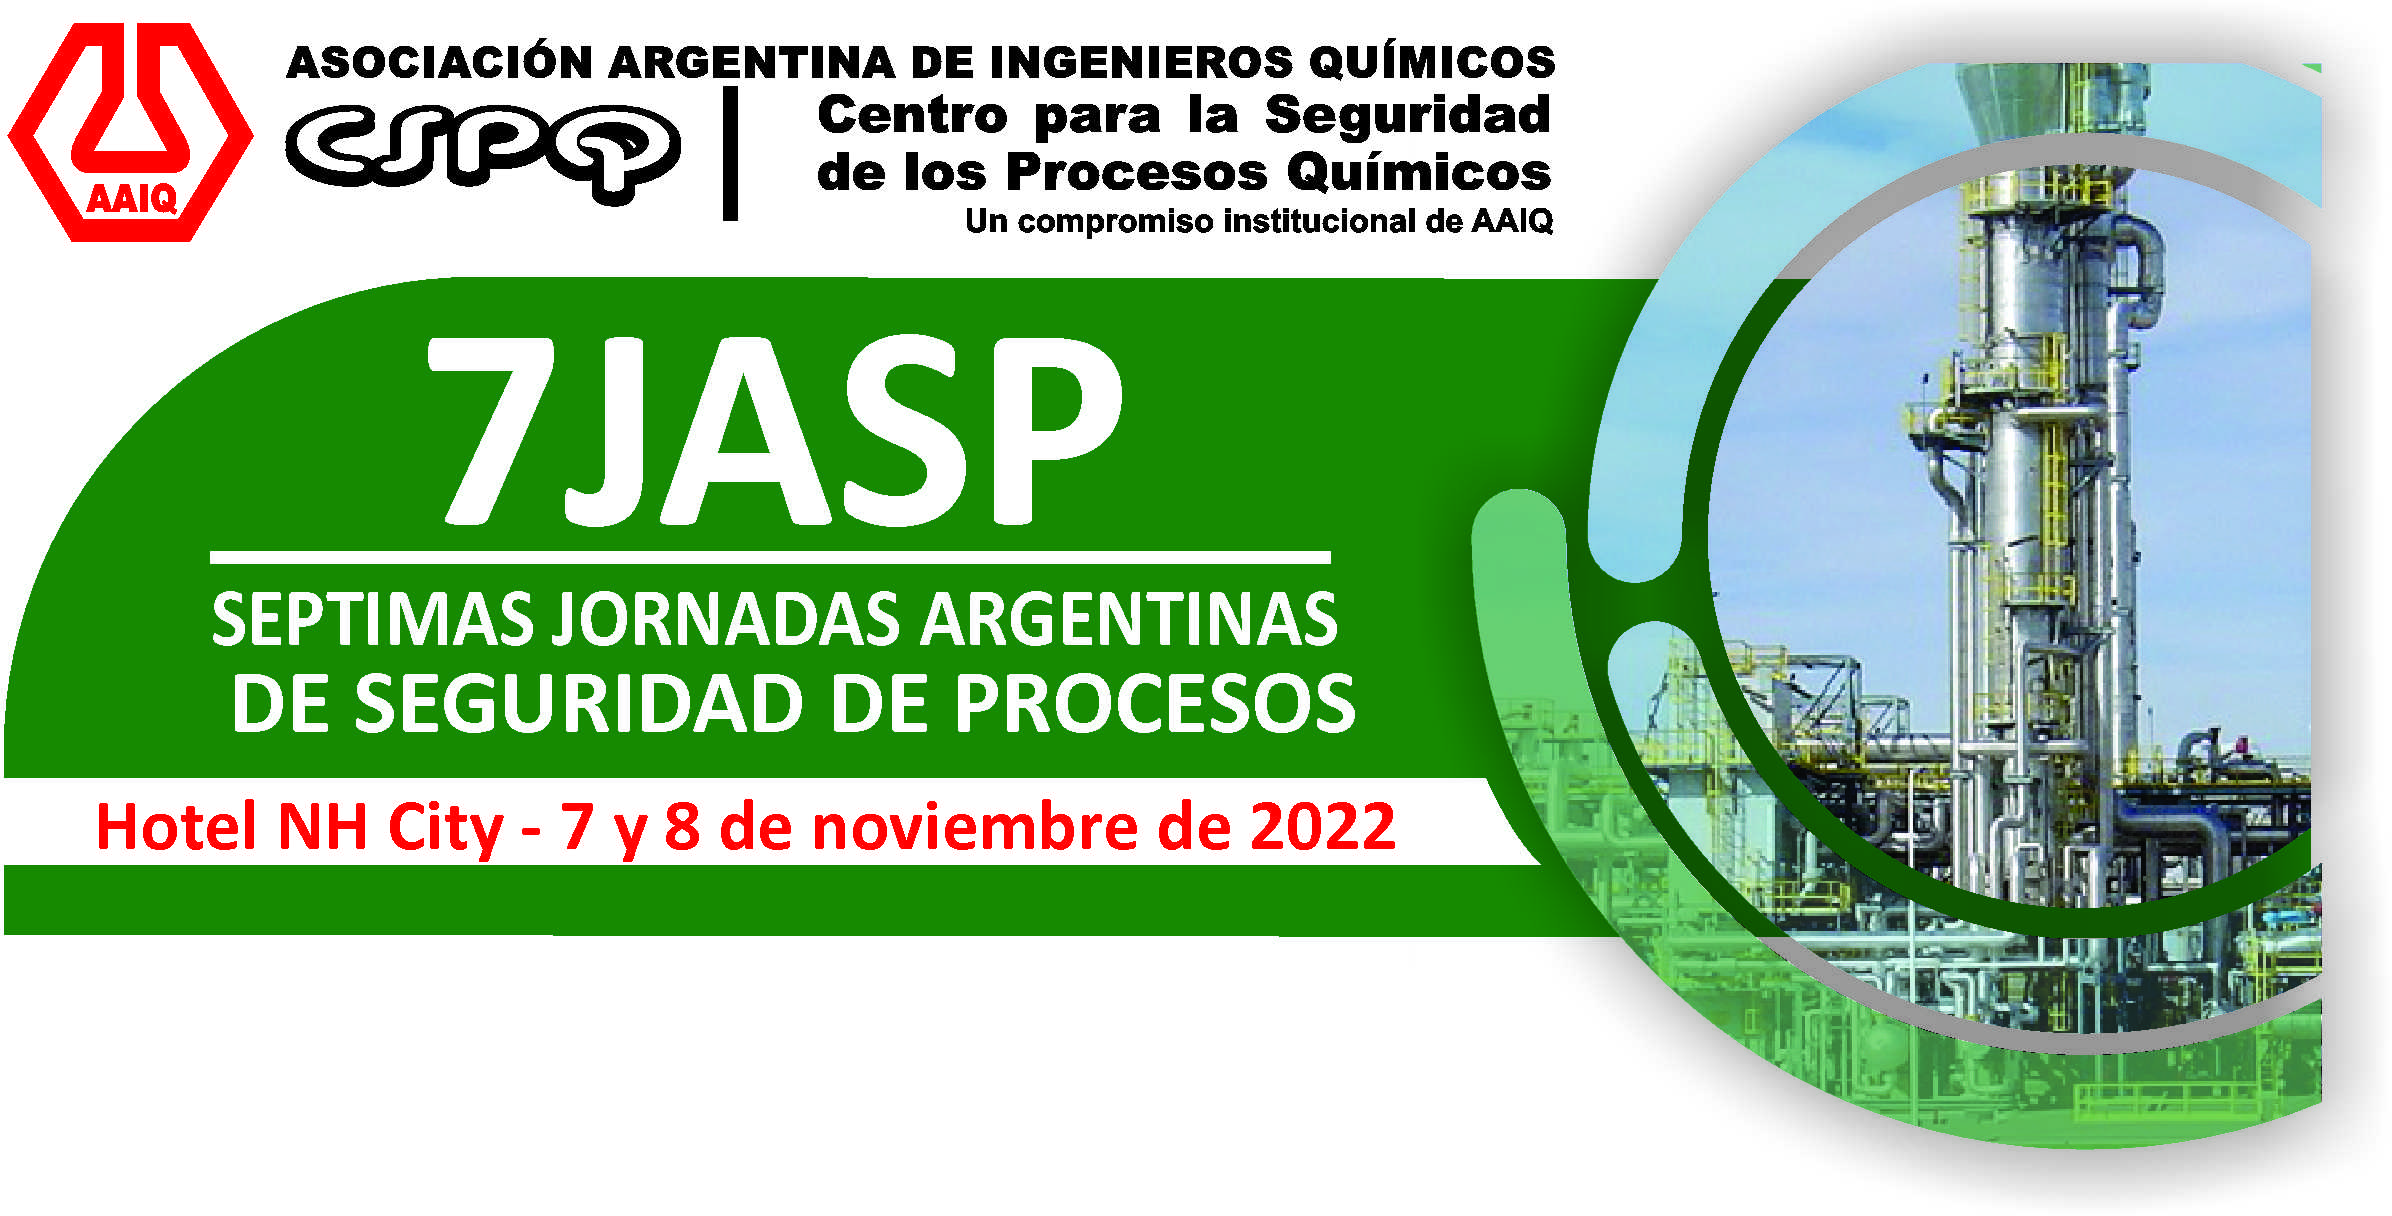 CSPQ-AAIQ - 7JASP Sptimas Jornadas Argentinas de Seguridad de Procesos<br>7 y 8 de Noviembre de 2022